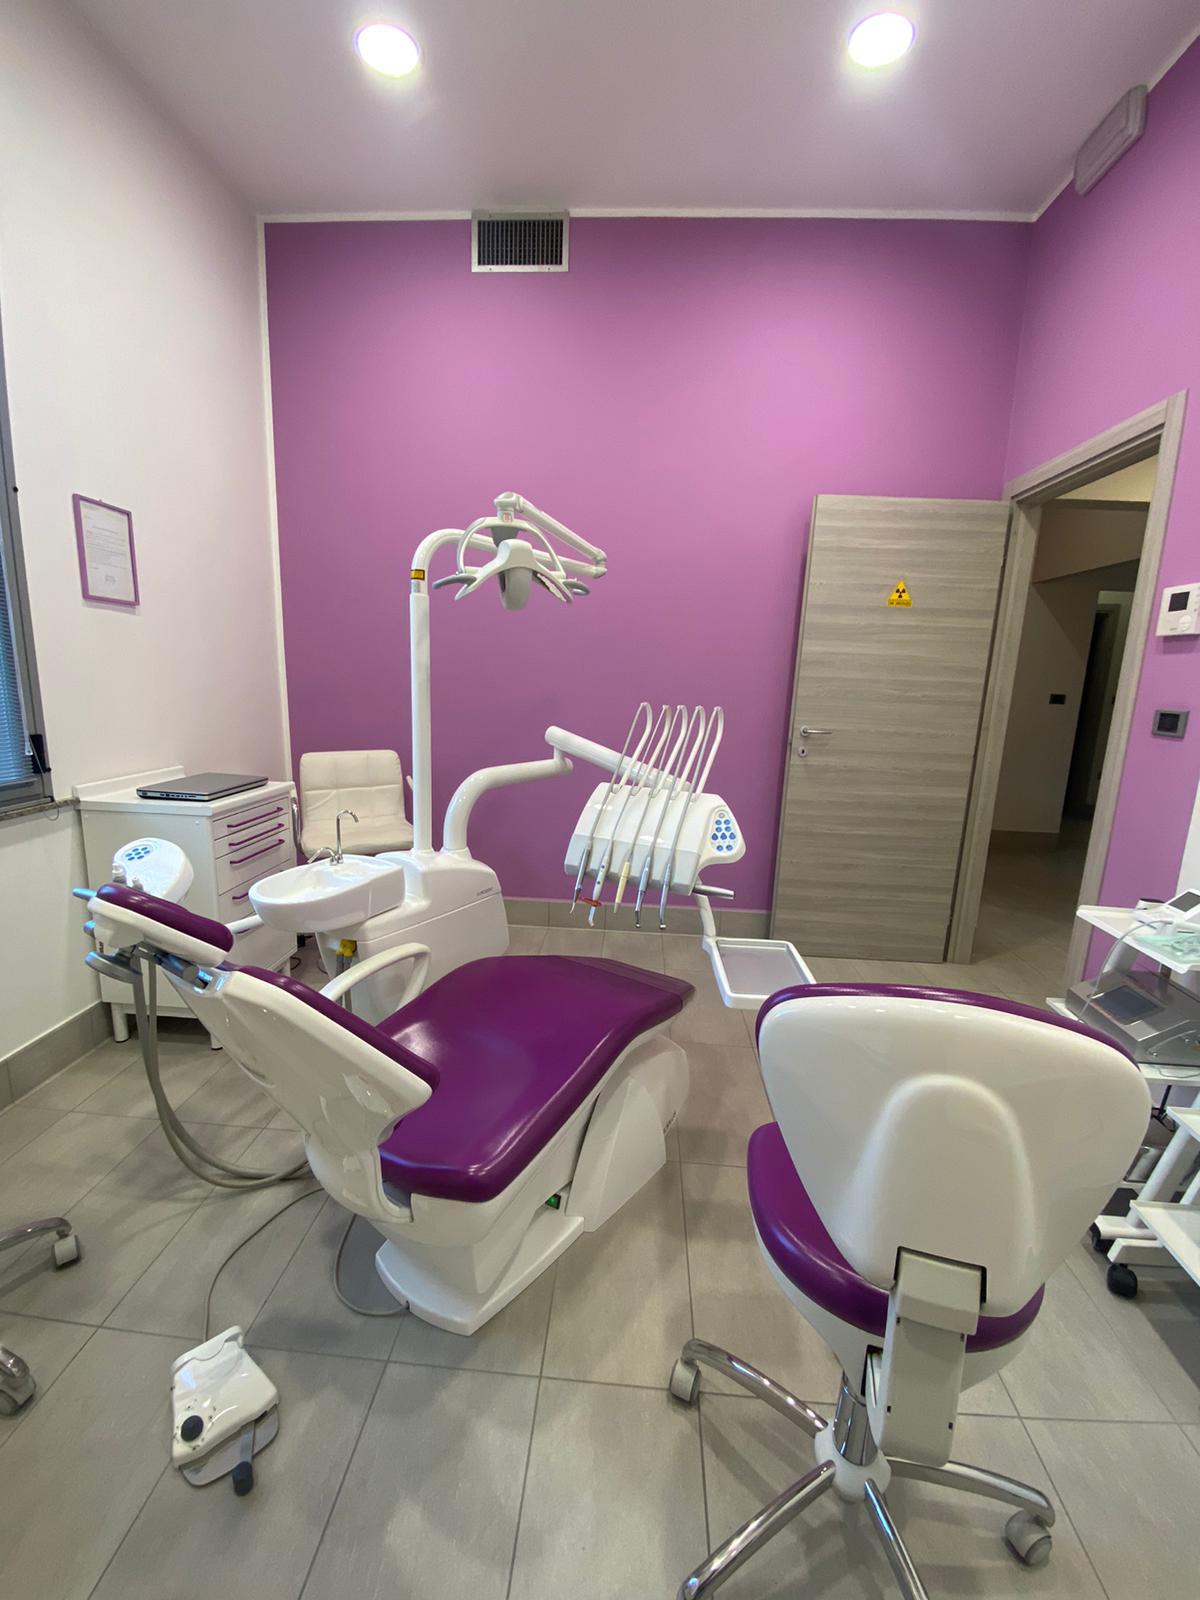 Emergenze Dentali con Dentisti Specialisti di Eccellenza | AKOS Centro Odontoiatrico Dental Care Parma Fiorenzuola Piacenza Fidenza Cremona Casalmaggiore Reggio Emilia